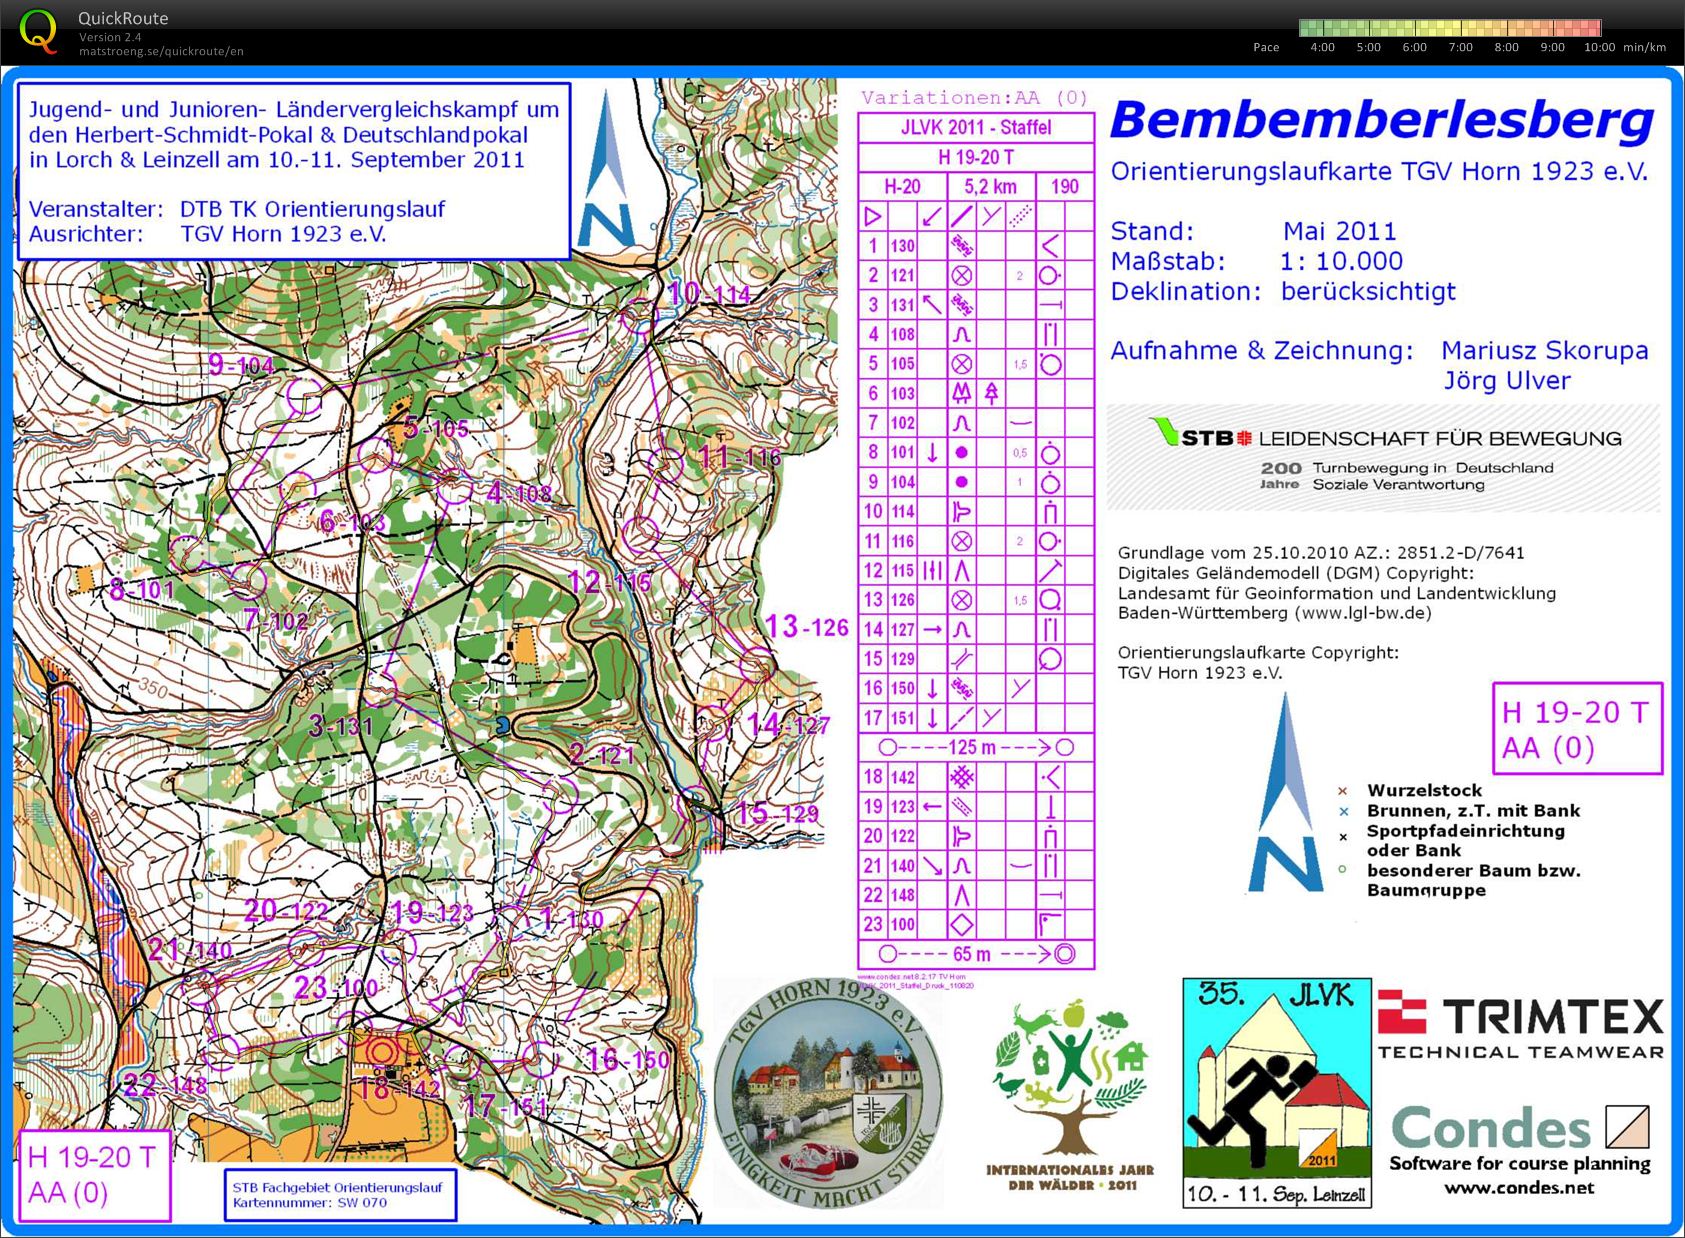 Training Bemberlesberg (01.04.2012)